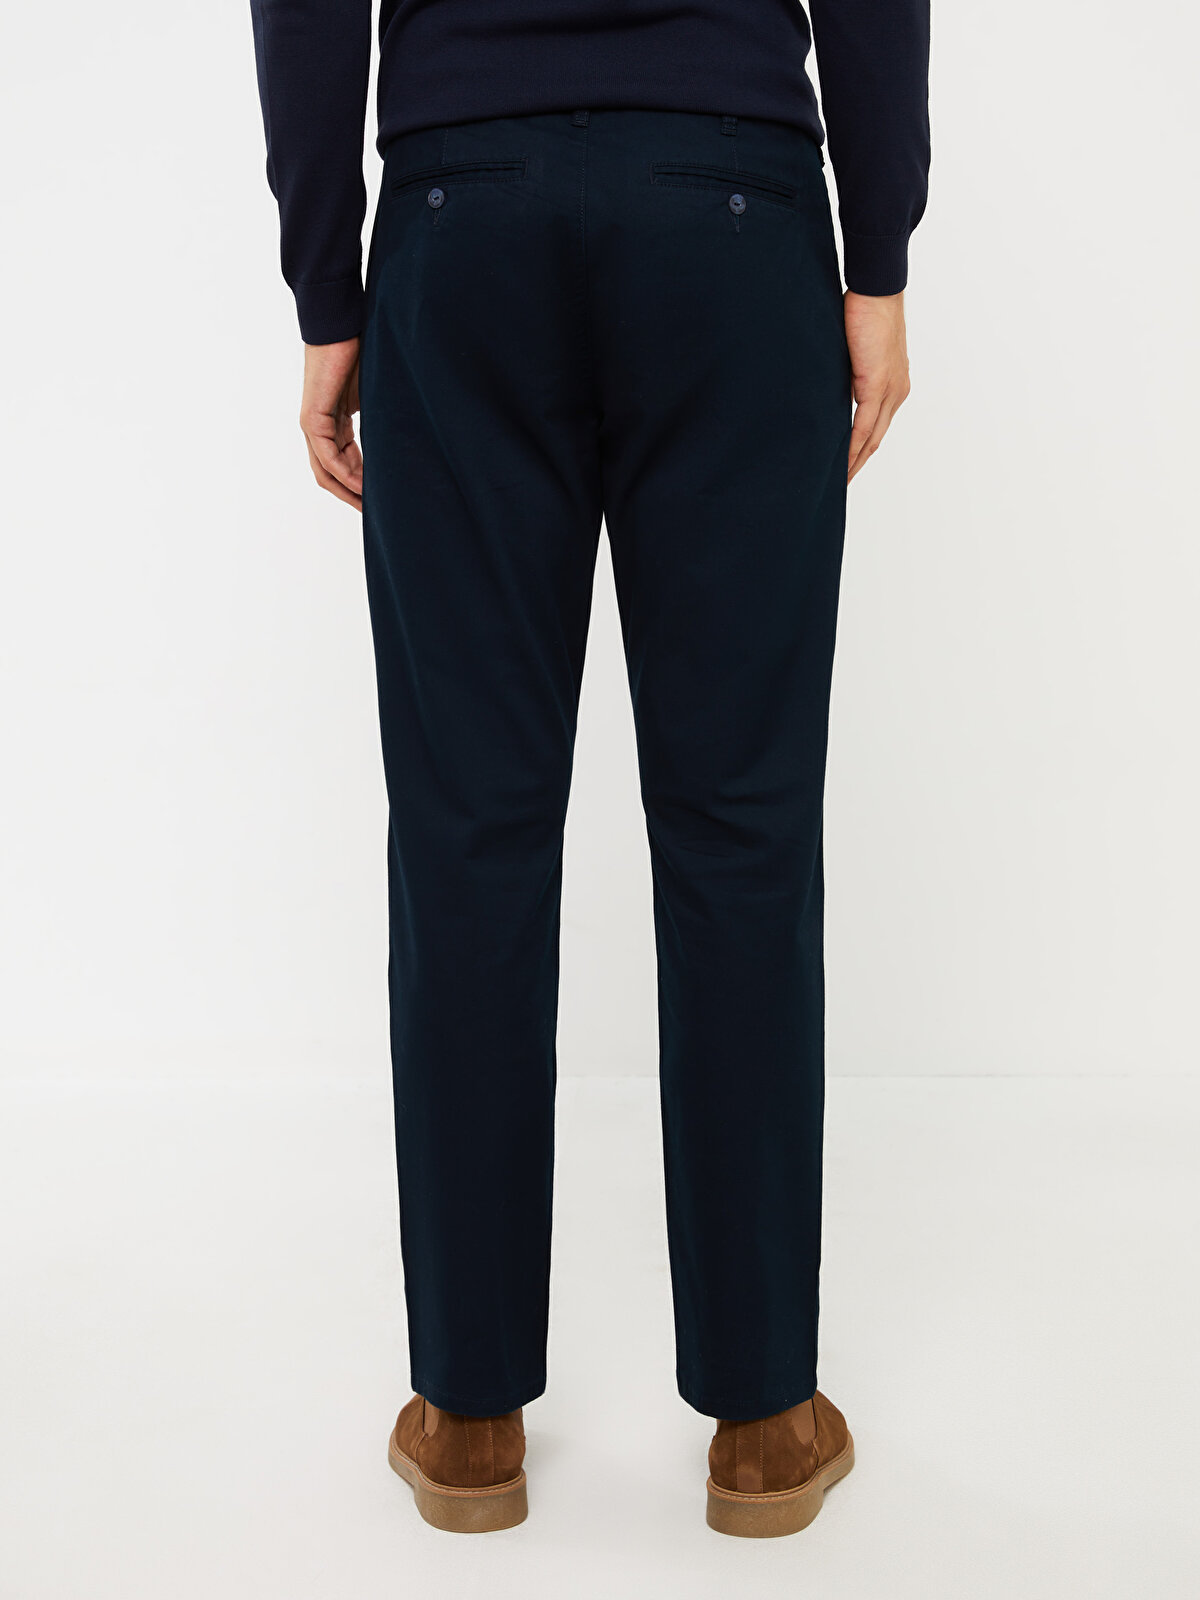 Standard Pattern Men's Chino Trousers -S40158Z8-KN7 - S40158Z8-KN7 